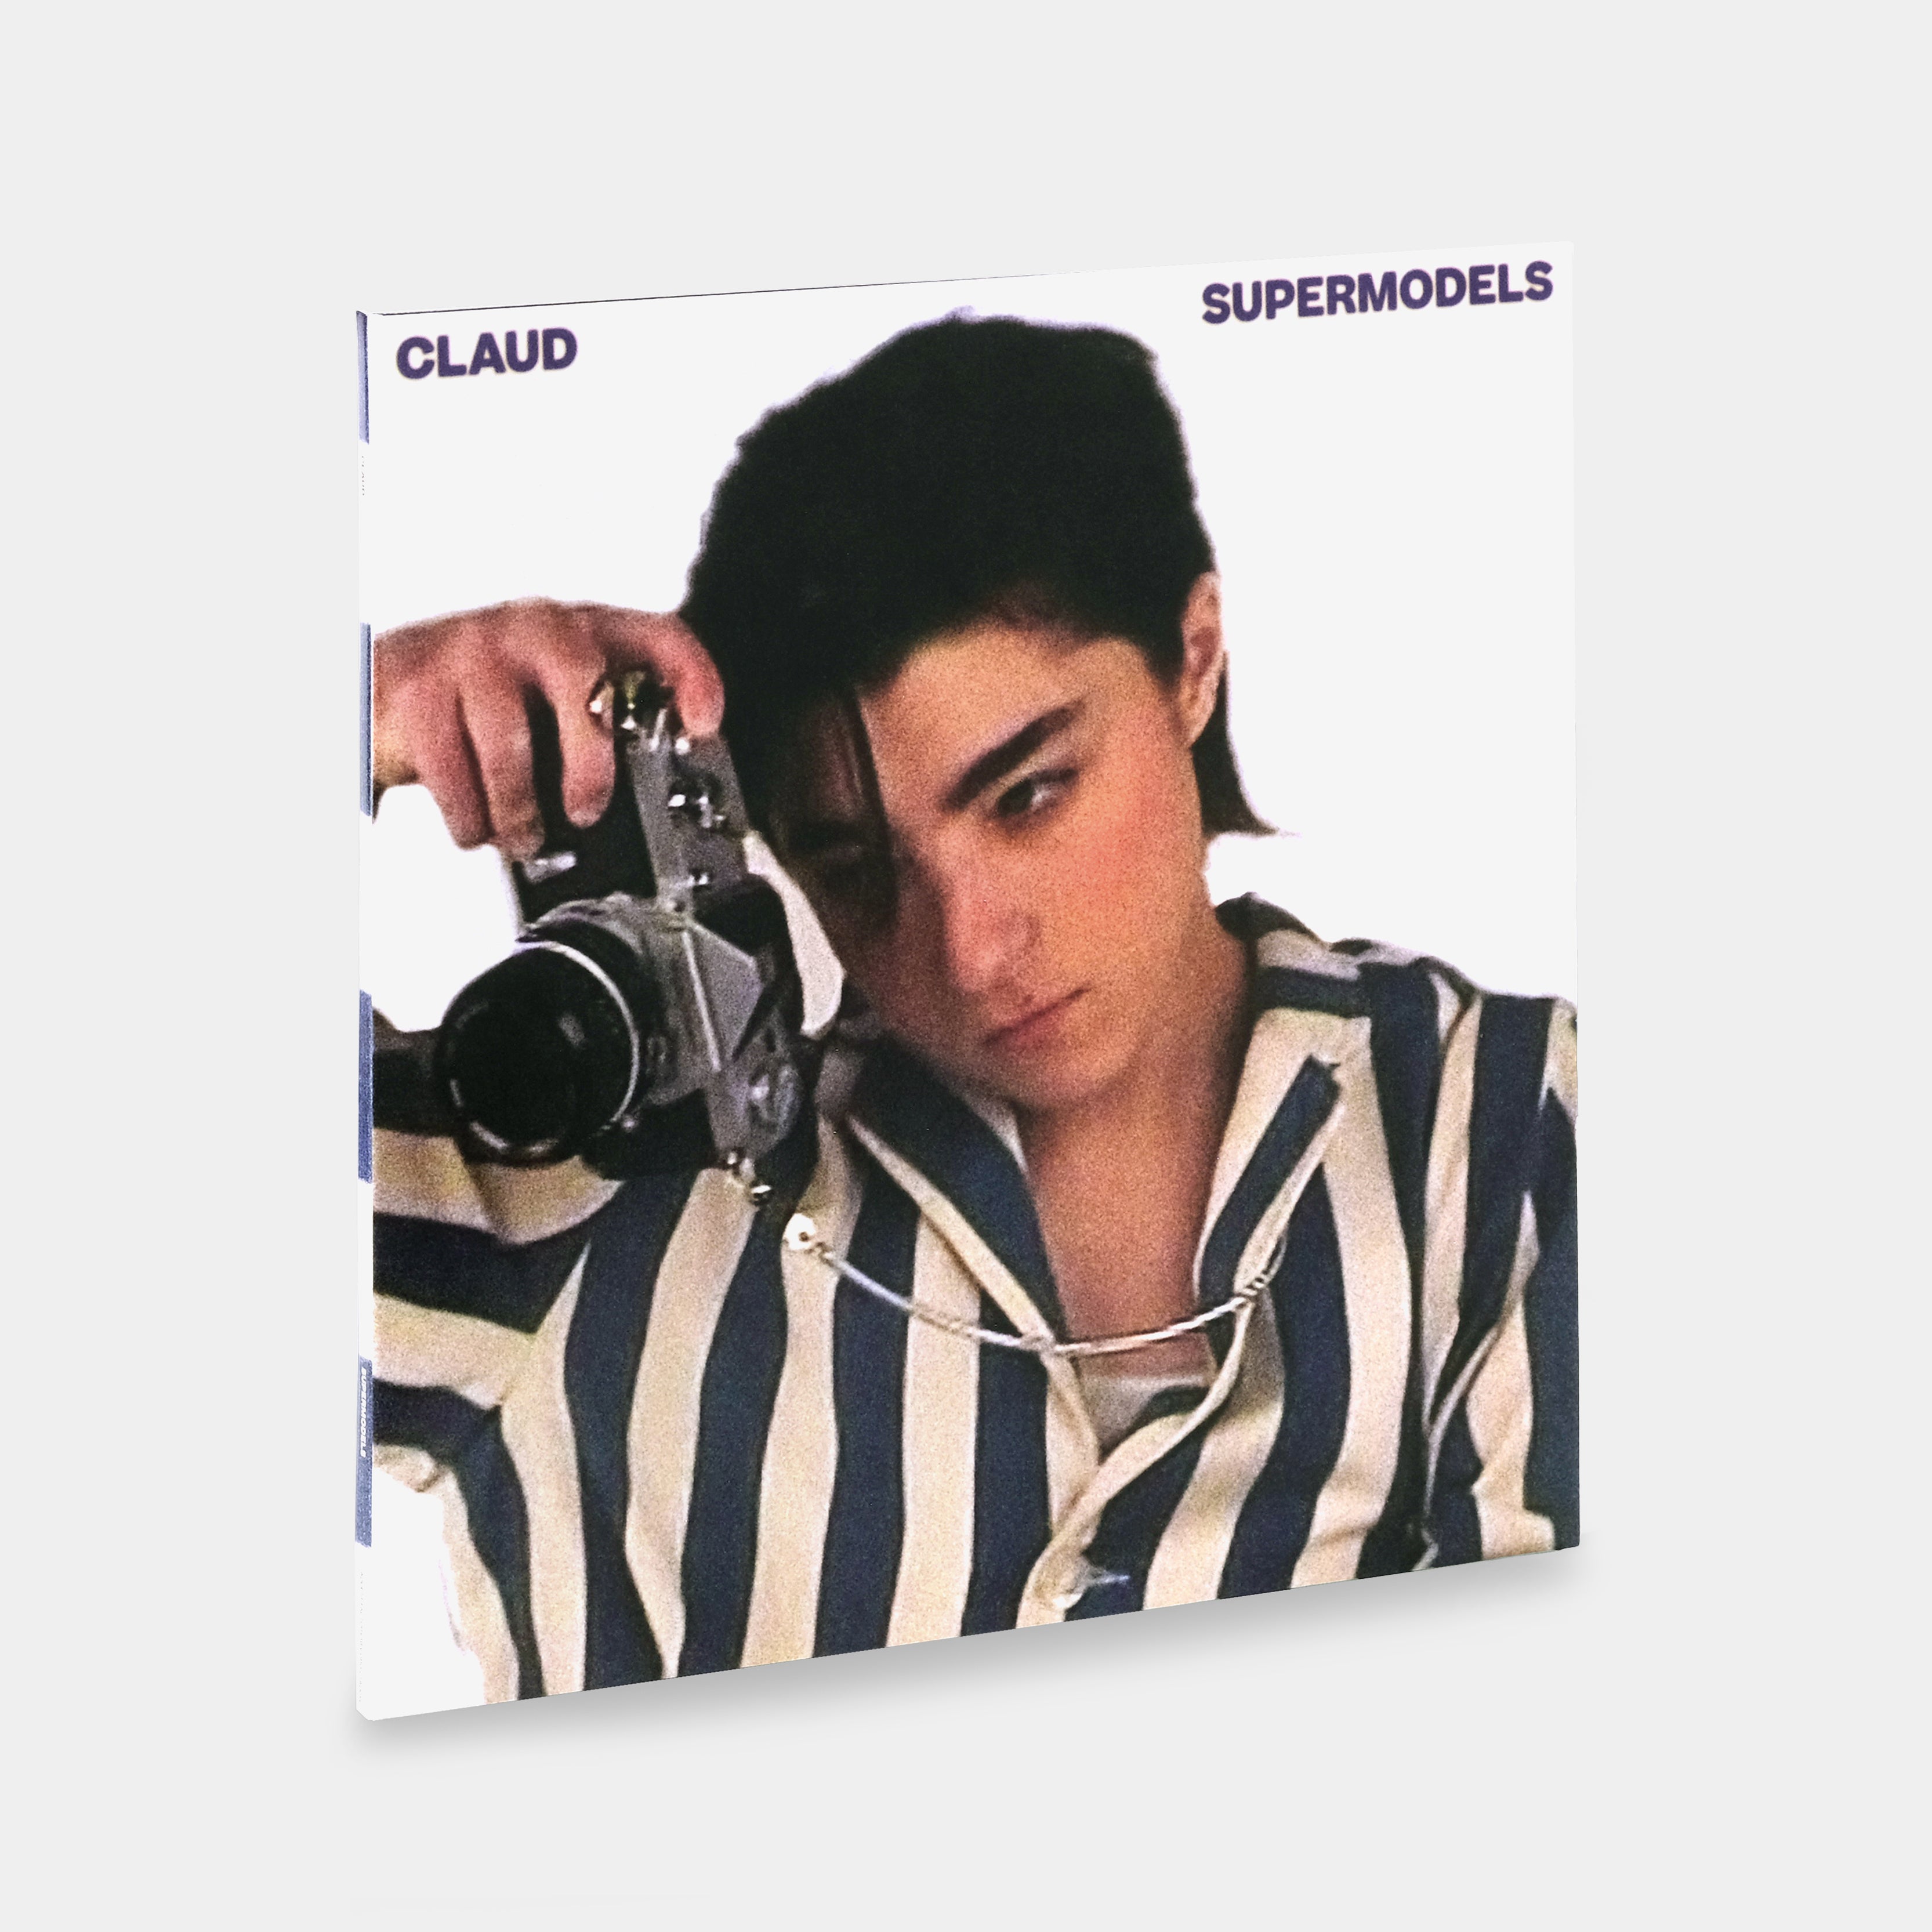 Claud - Supermodels LP Cloud Color Vinyl Record